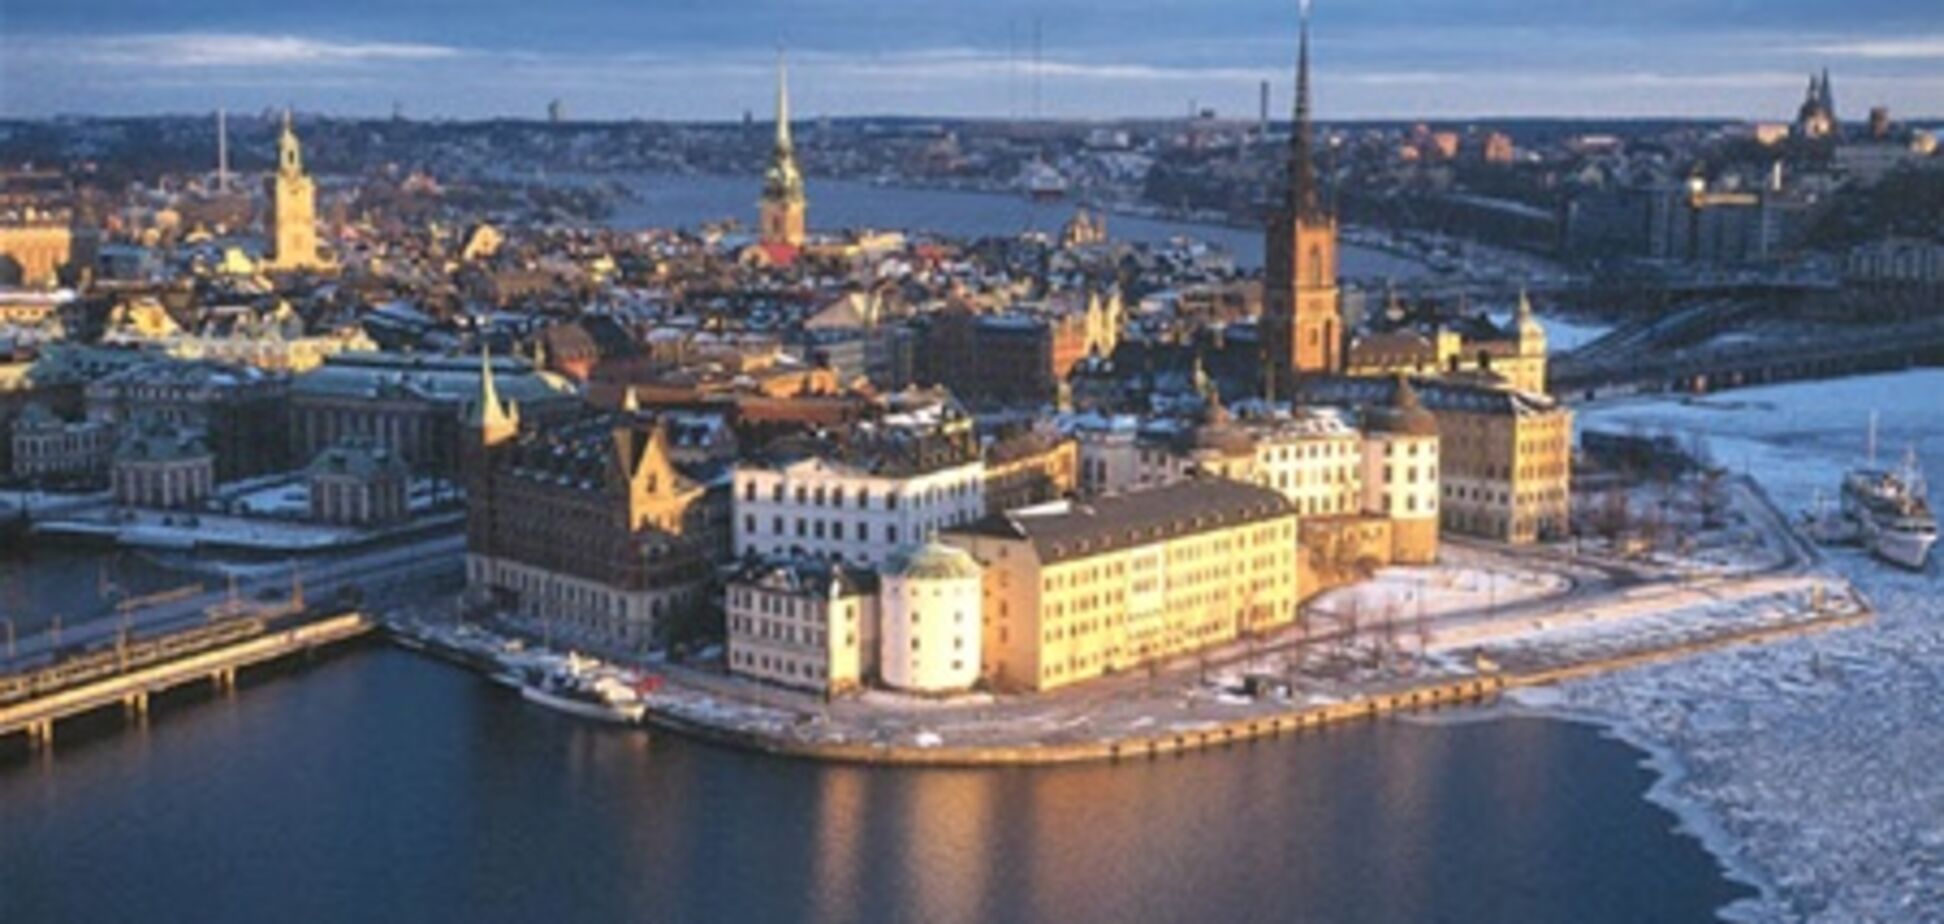 Субаренда в Швеции растет в цене